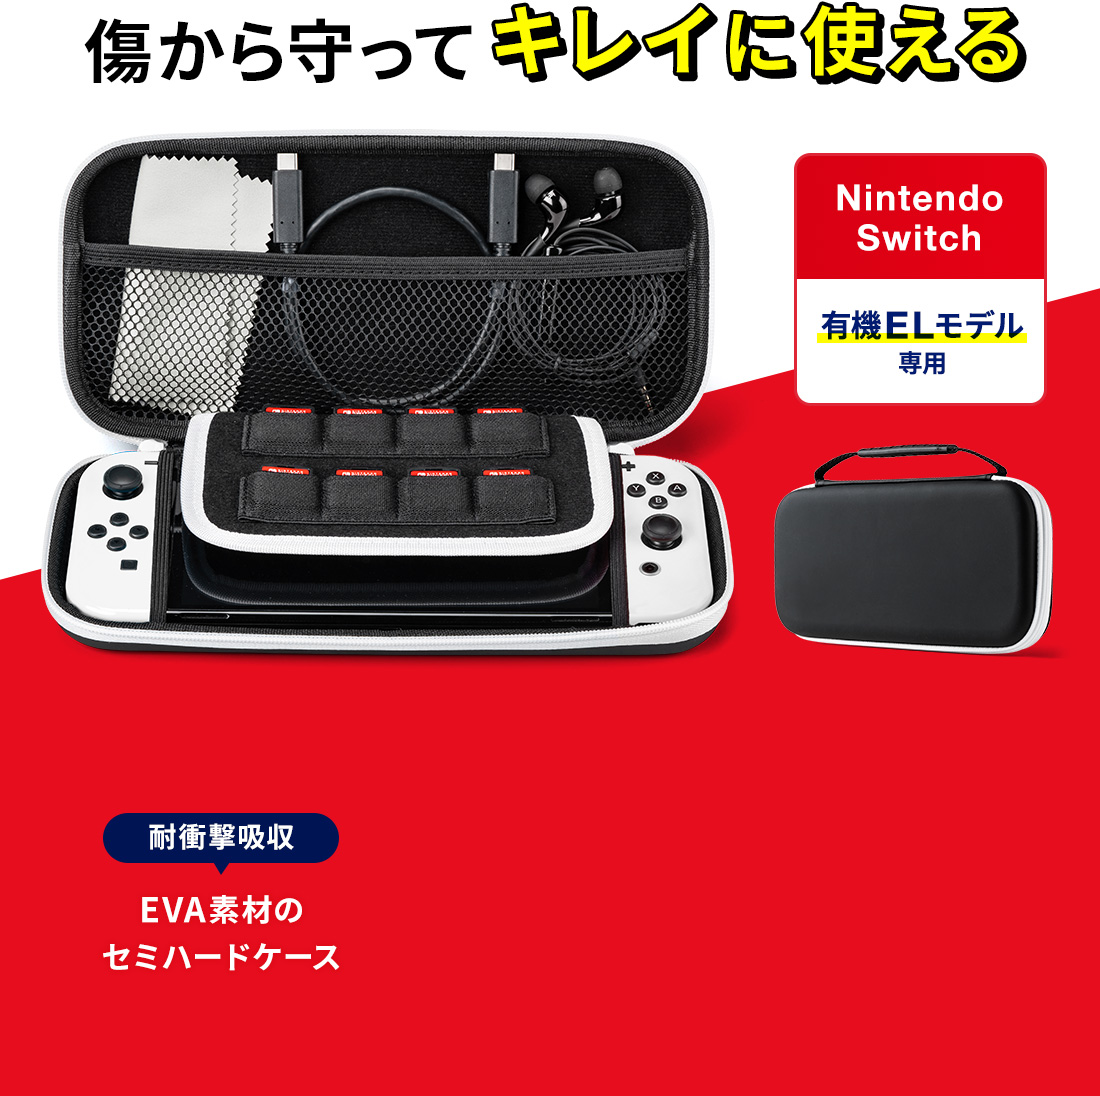 傷から守ってキレイに使える Nintendo Switch 有機ELモデル専用 耐衝撃吸収 EVA素材のセミハードケース